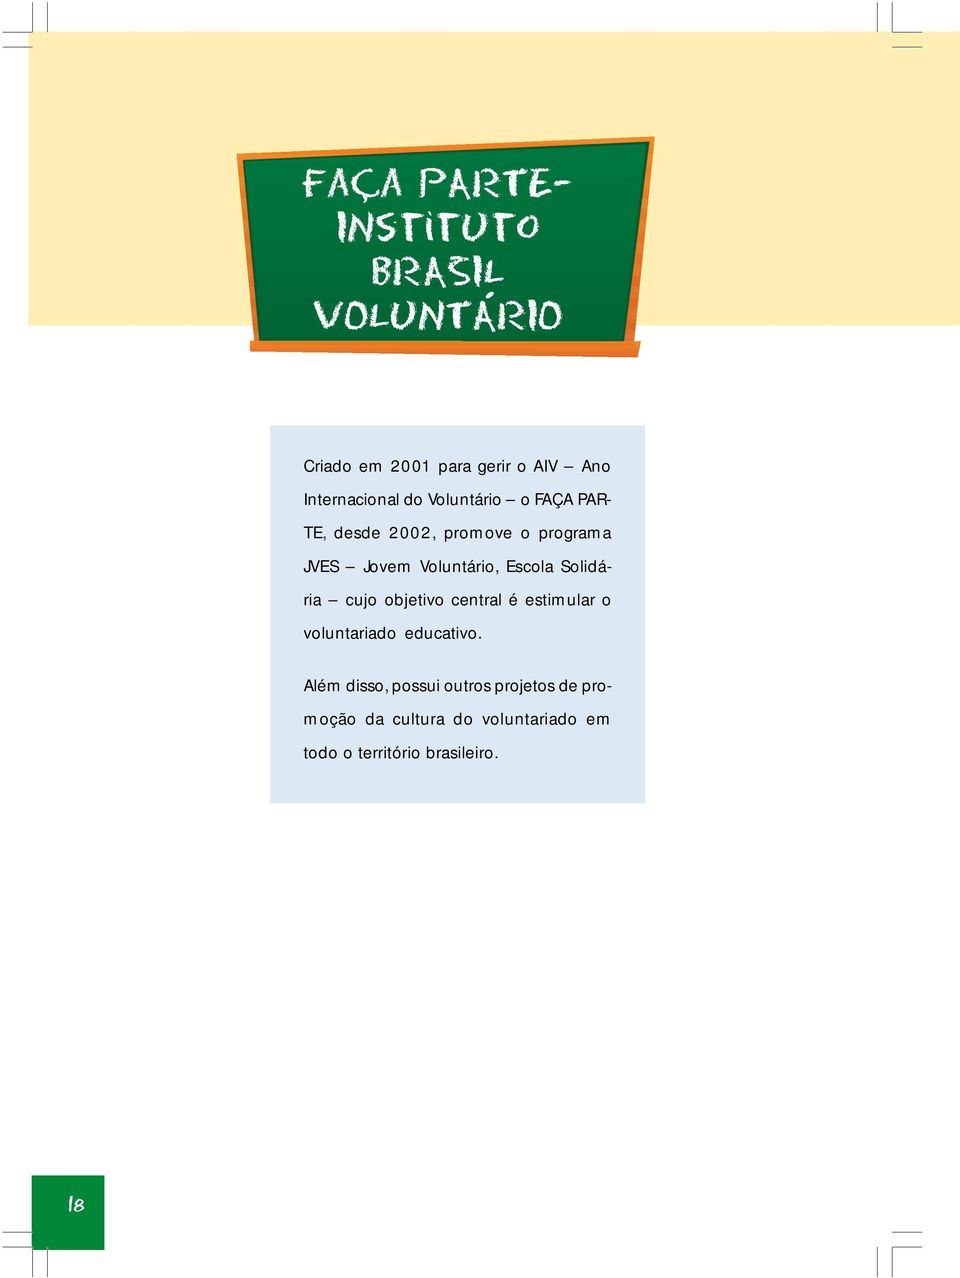 Voluntário, Escola Solidária cujo objetivo central é estimular o voluntariado educativo.